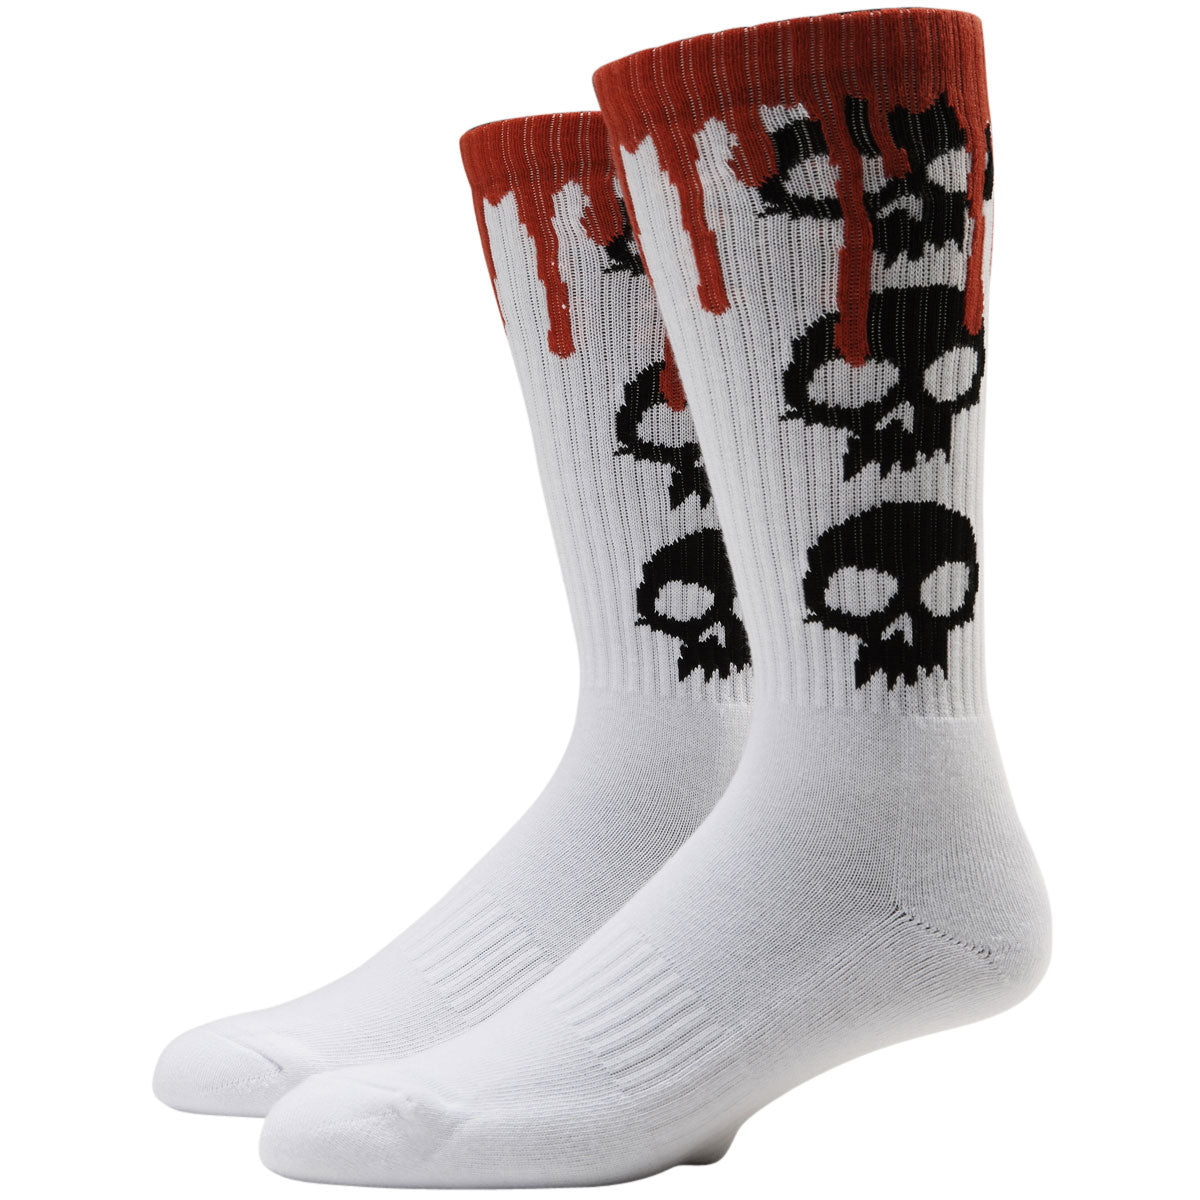 Zero 3 Skull Blood Socks - White image 1